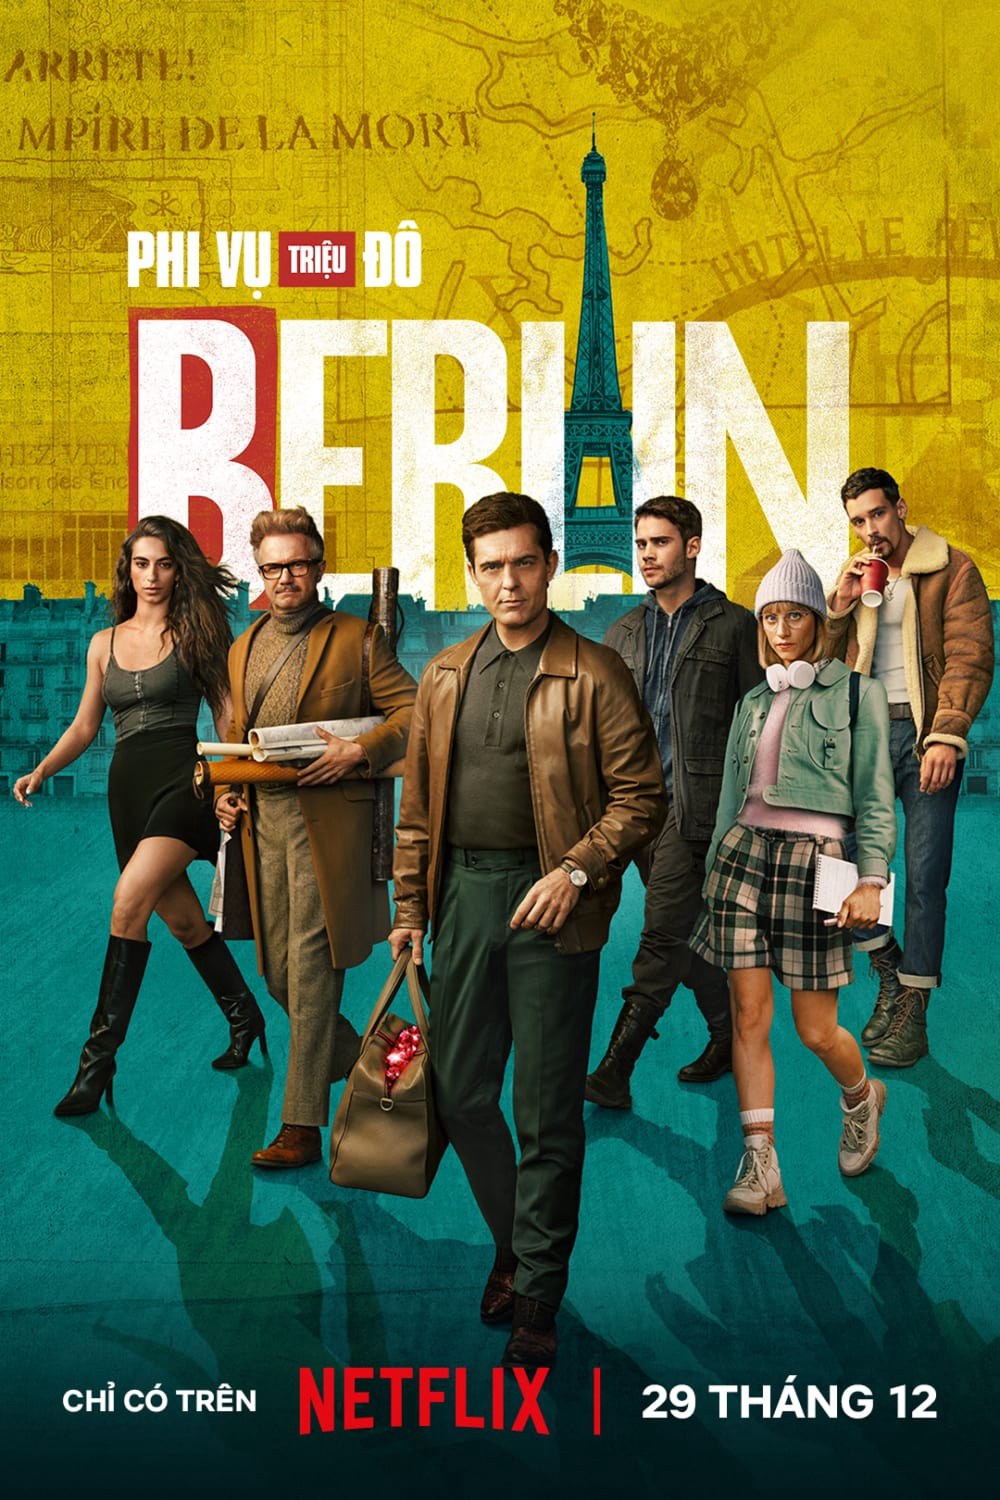 Xem Phim Phi Vụ Triệu Đô: Berlin (Berlin)